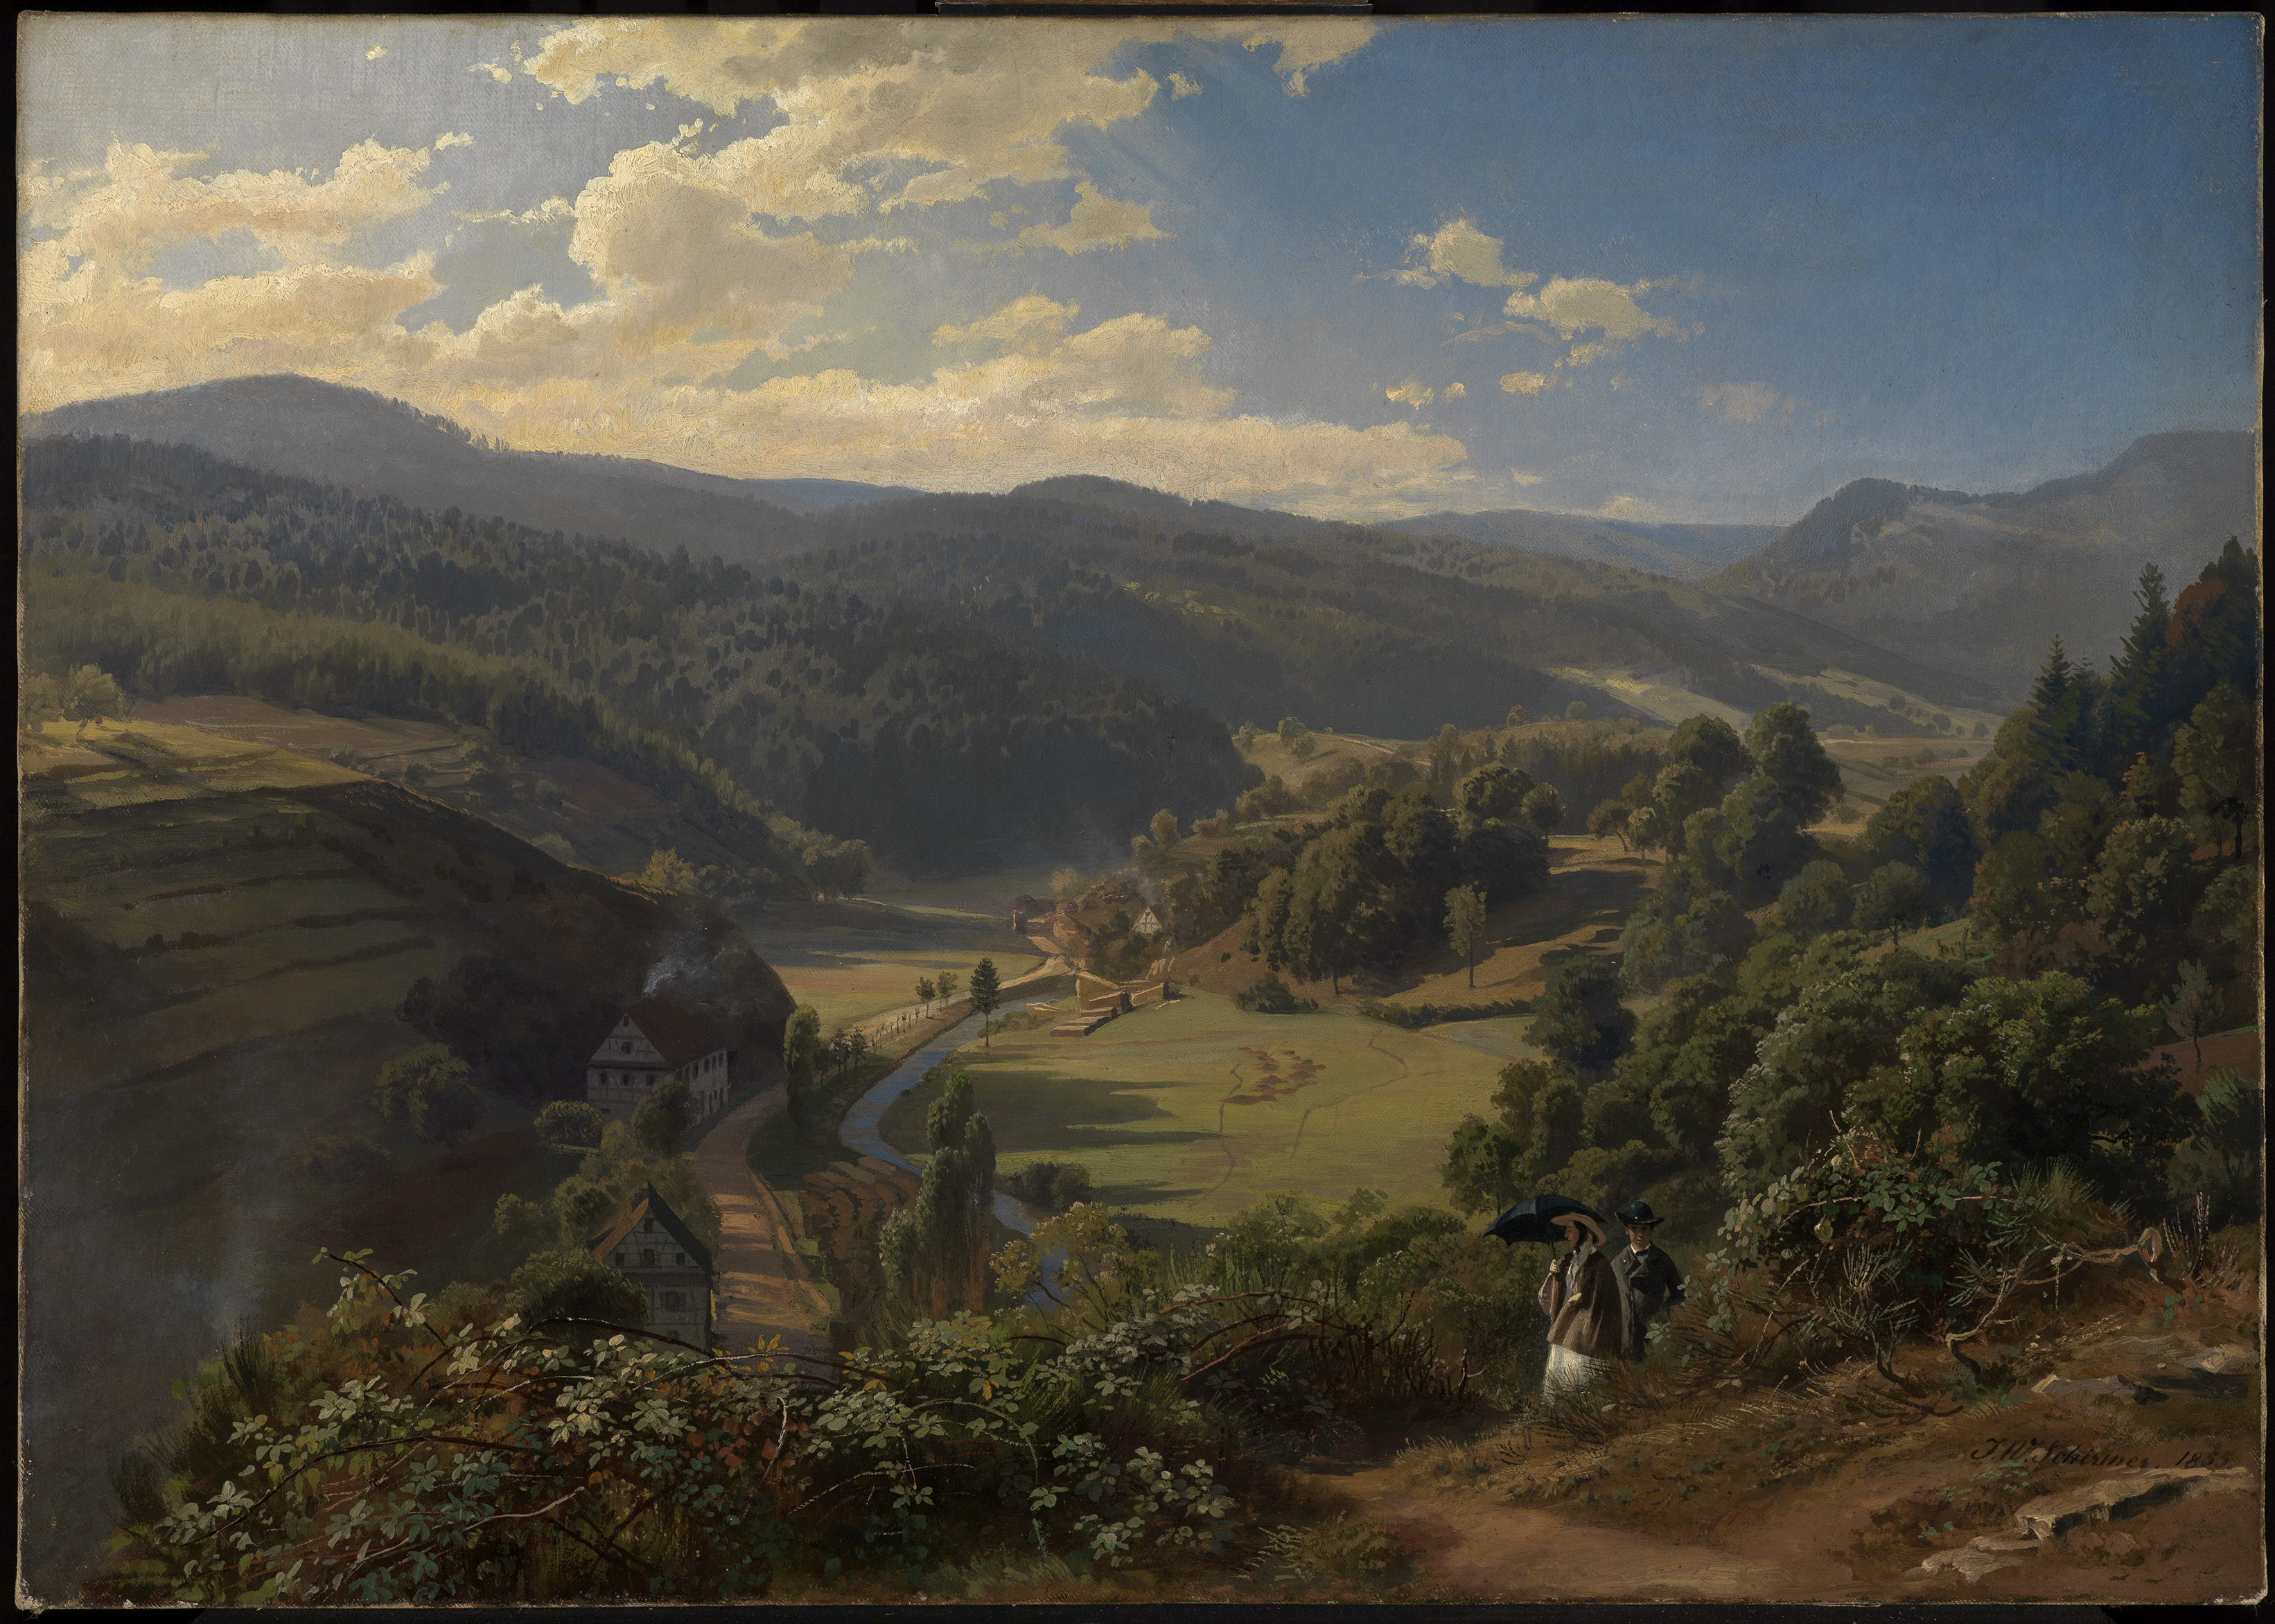 バーデン・バーデン近くのゲォルドサワー渓谷 by Johann Wilhelm Schirmer - 1855年 - 59.5 x 82.5 cm 